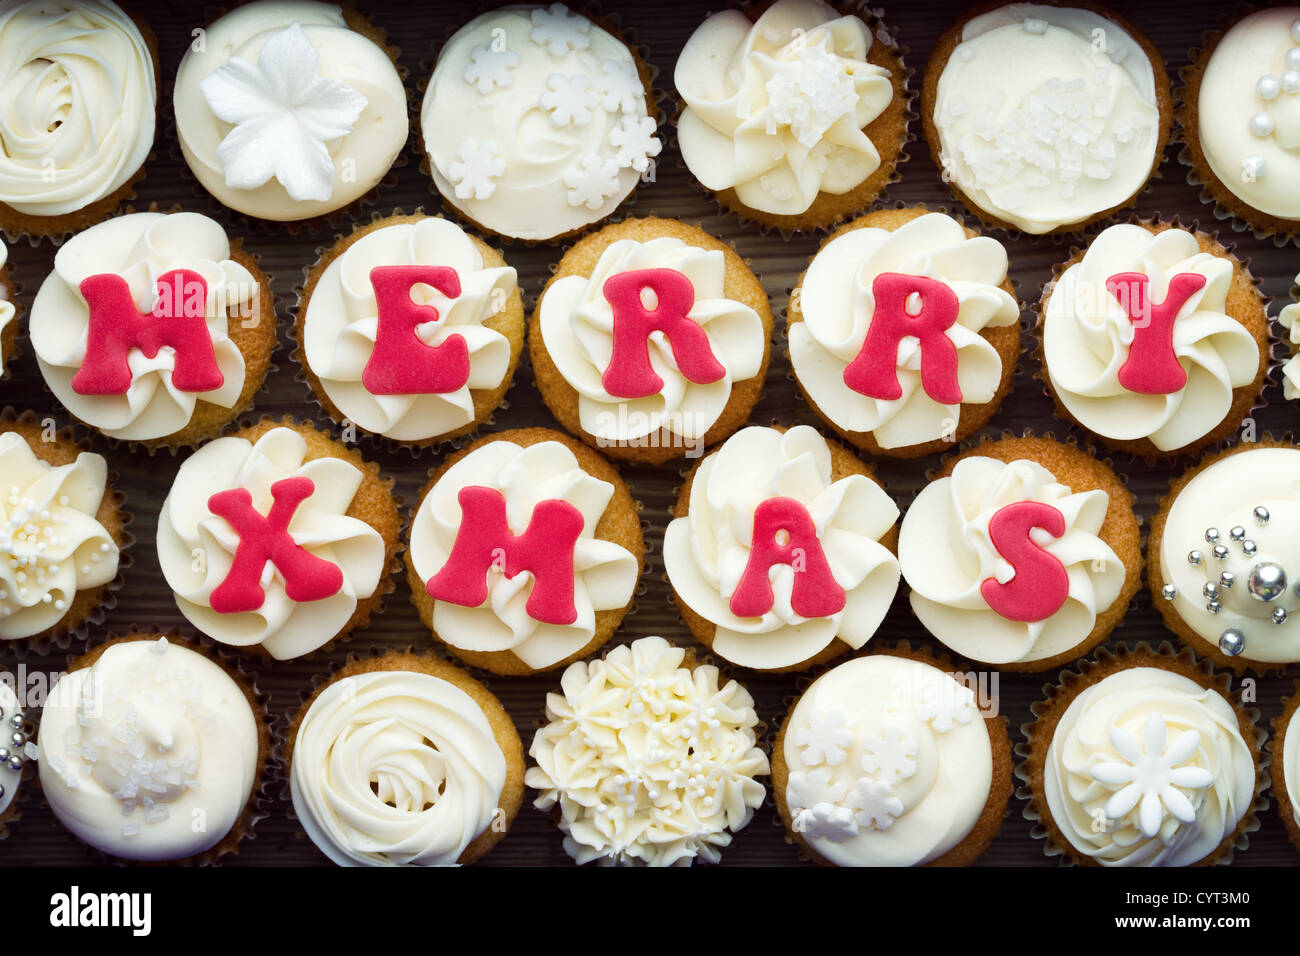 Christmas cupcakes Stock Photo